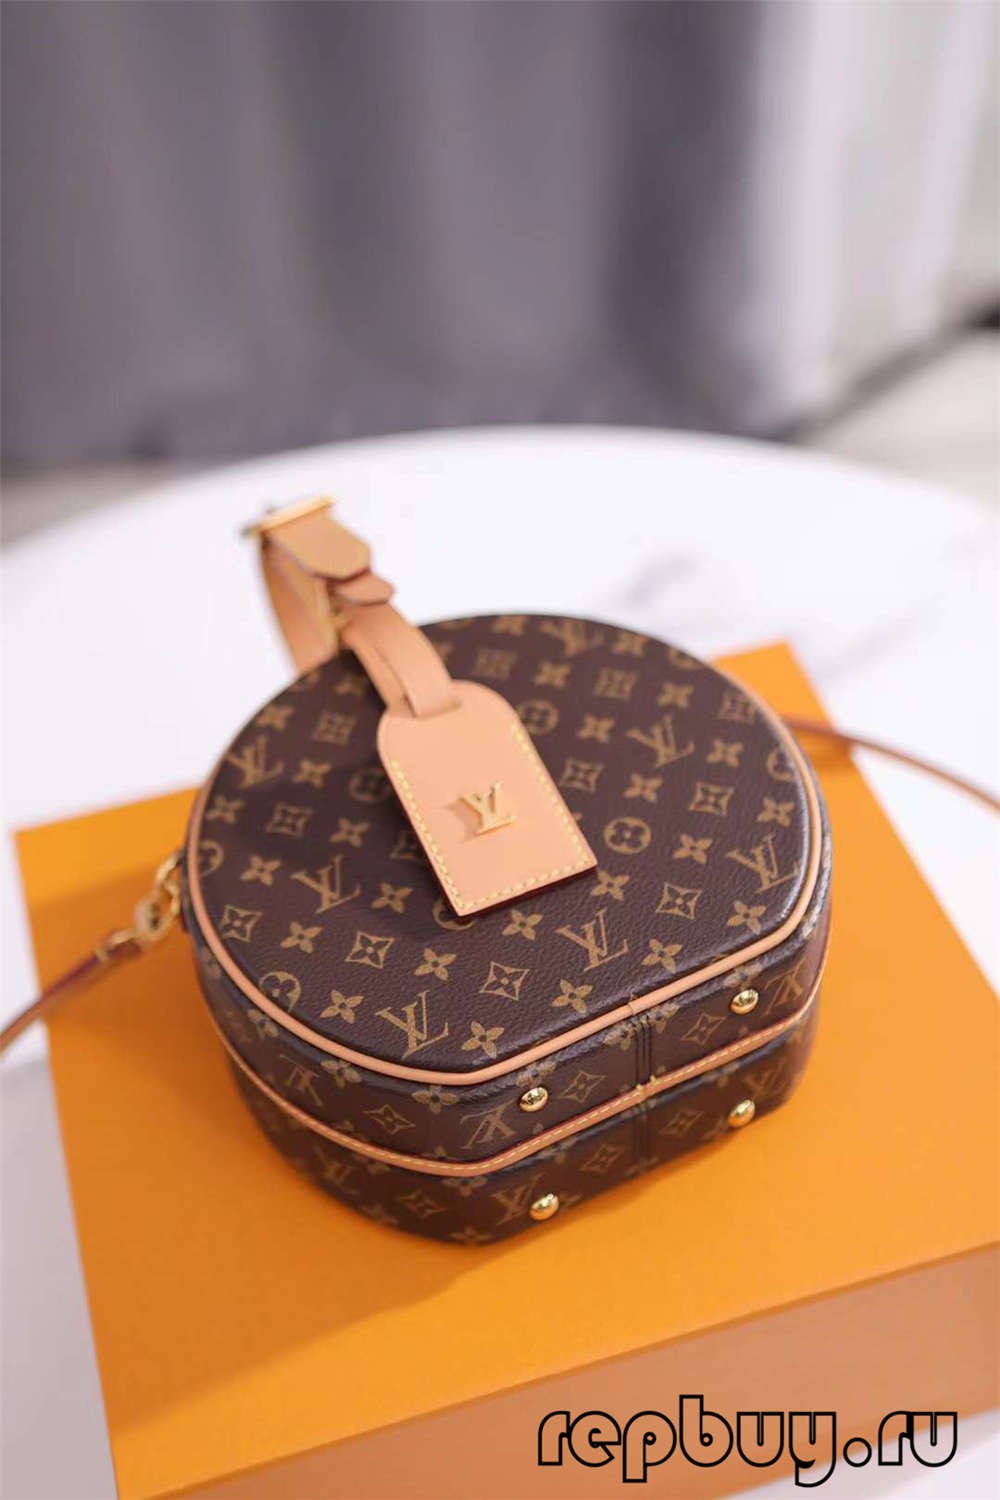 Louis Vuitton M43514 PETITE BOITE CHAPEAU 17.5 cm-ko goiko erreplikako poltsak Hardwarea eta artisautza xehetasunak (2022ko edizioa)-Best Quality Fake Louis Vuitton Bag Online Store, Replica designer bag ru